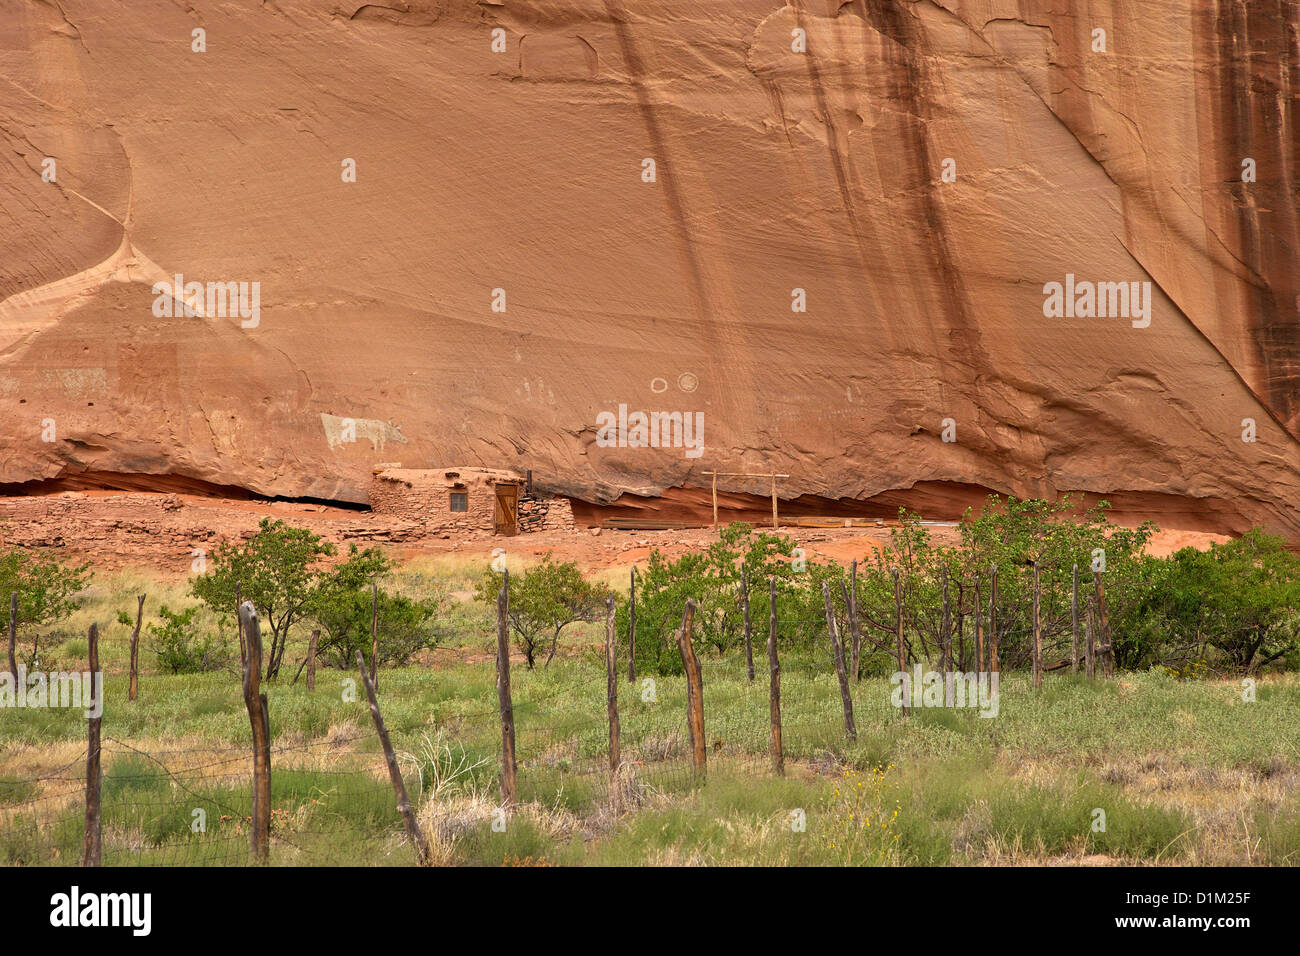 Vaca permanente ruina, Monumento Nacional Cañón de Chelly, Arizona, EE.UU. Foto de stock